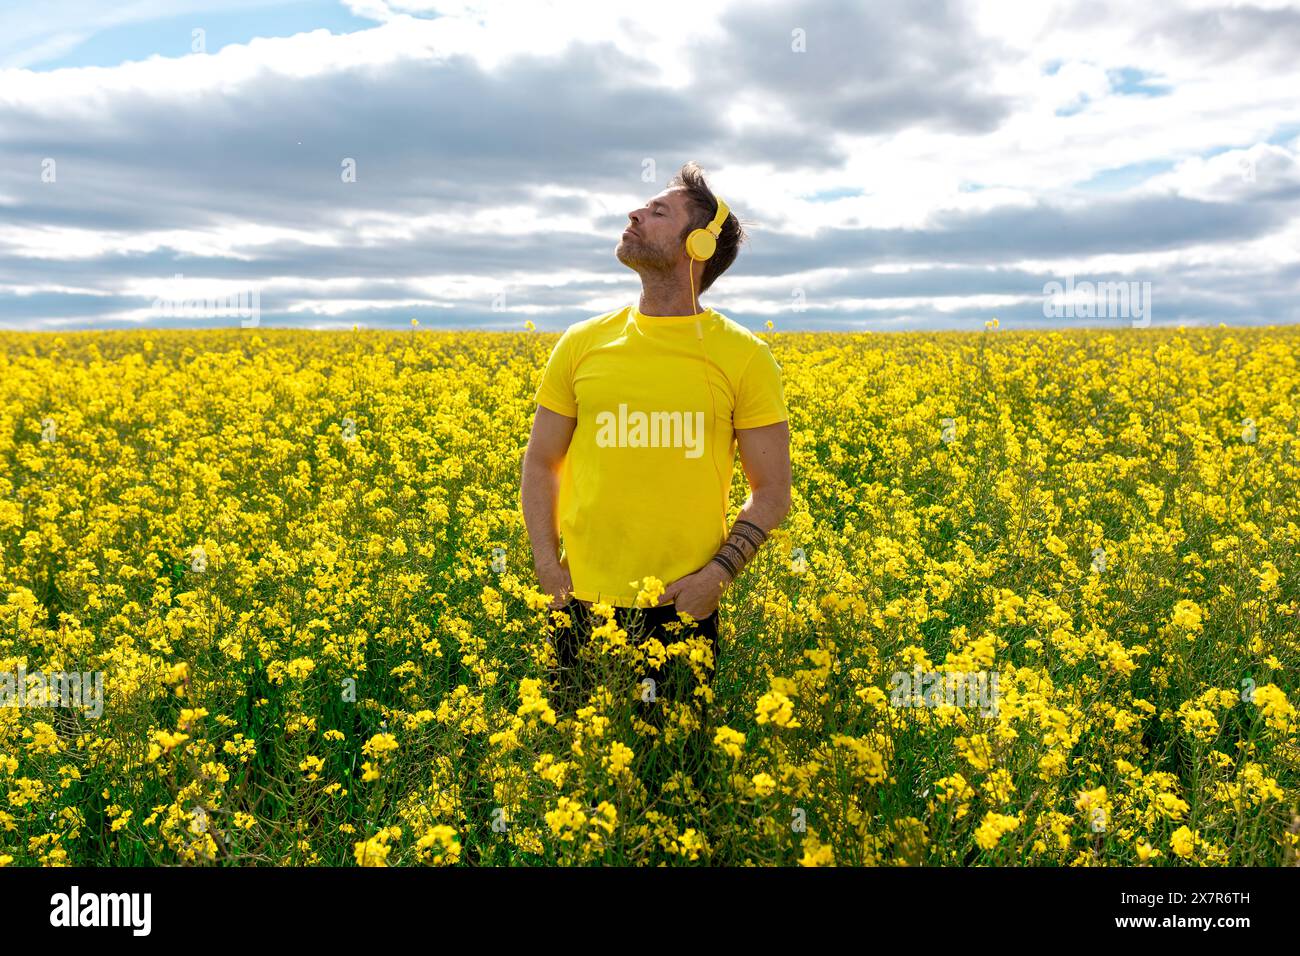 Un uomo si trova in un campo di colza giallo vivo, perso nel pensiero mentre ascolta la musica attraverso le cuffie gialle, a simboleggiare il relax e la natura Foto Stock